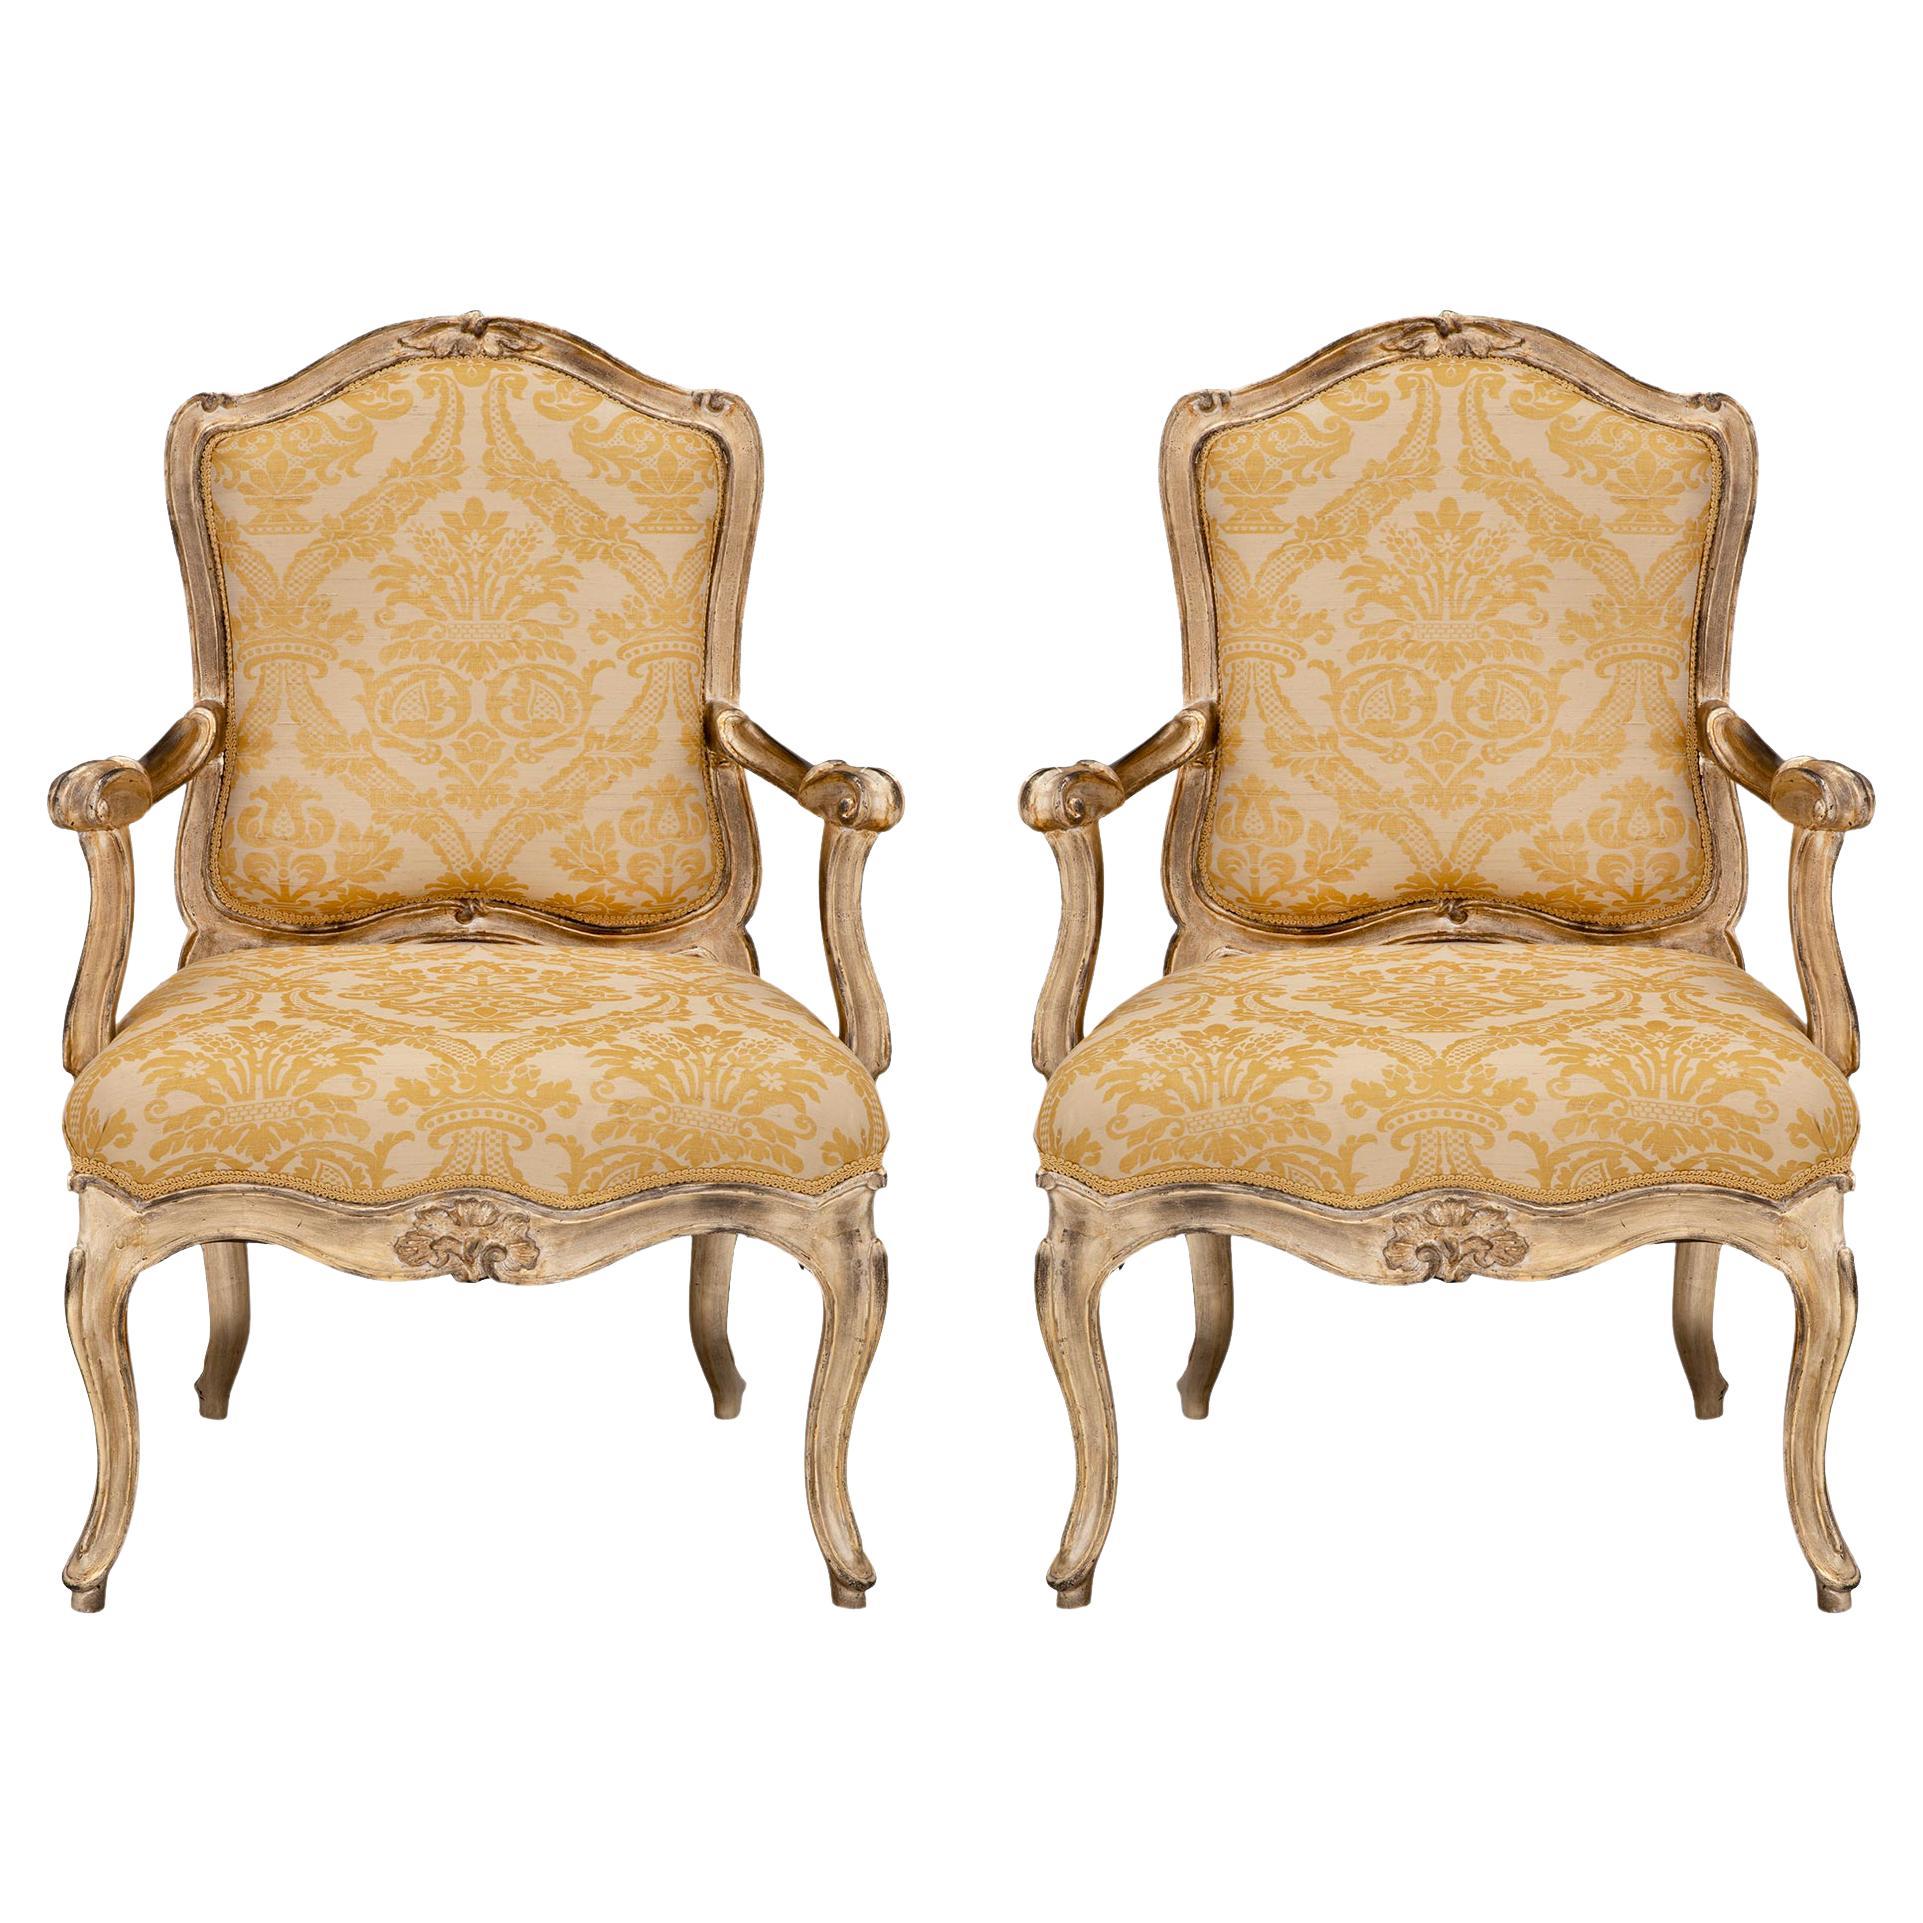 Paar italienische venezianische Sessel im Louis XV-Stil mit versilberten Blättern aus dem 18. Jh.